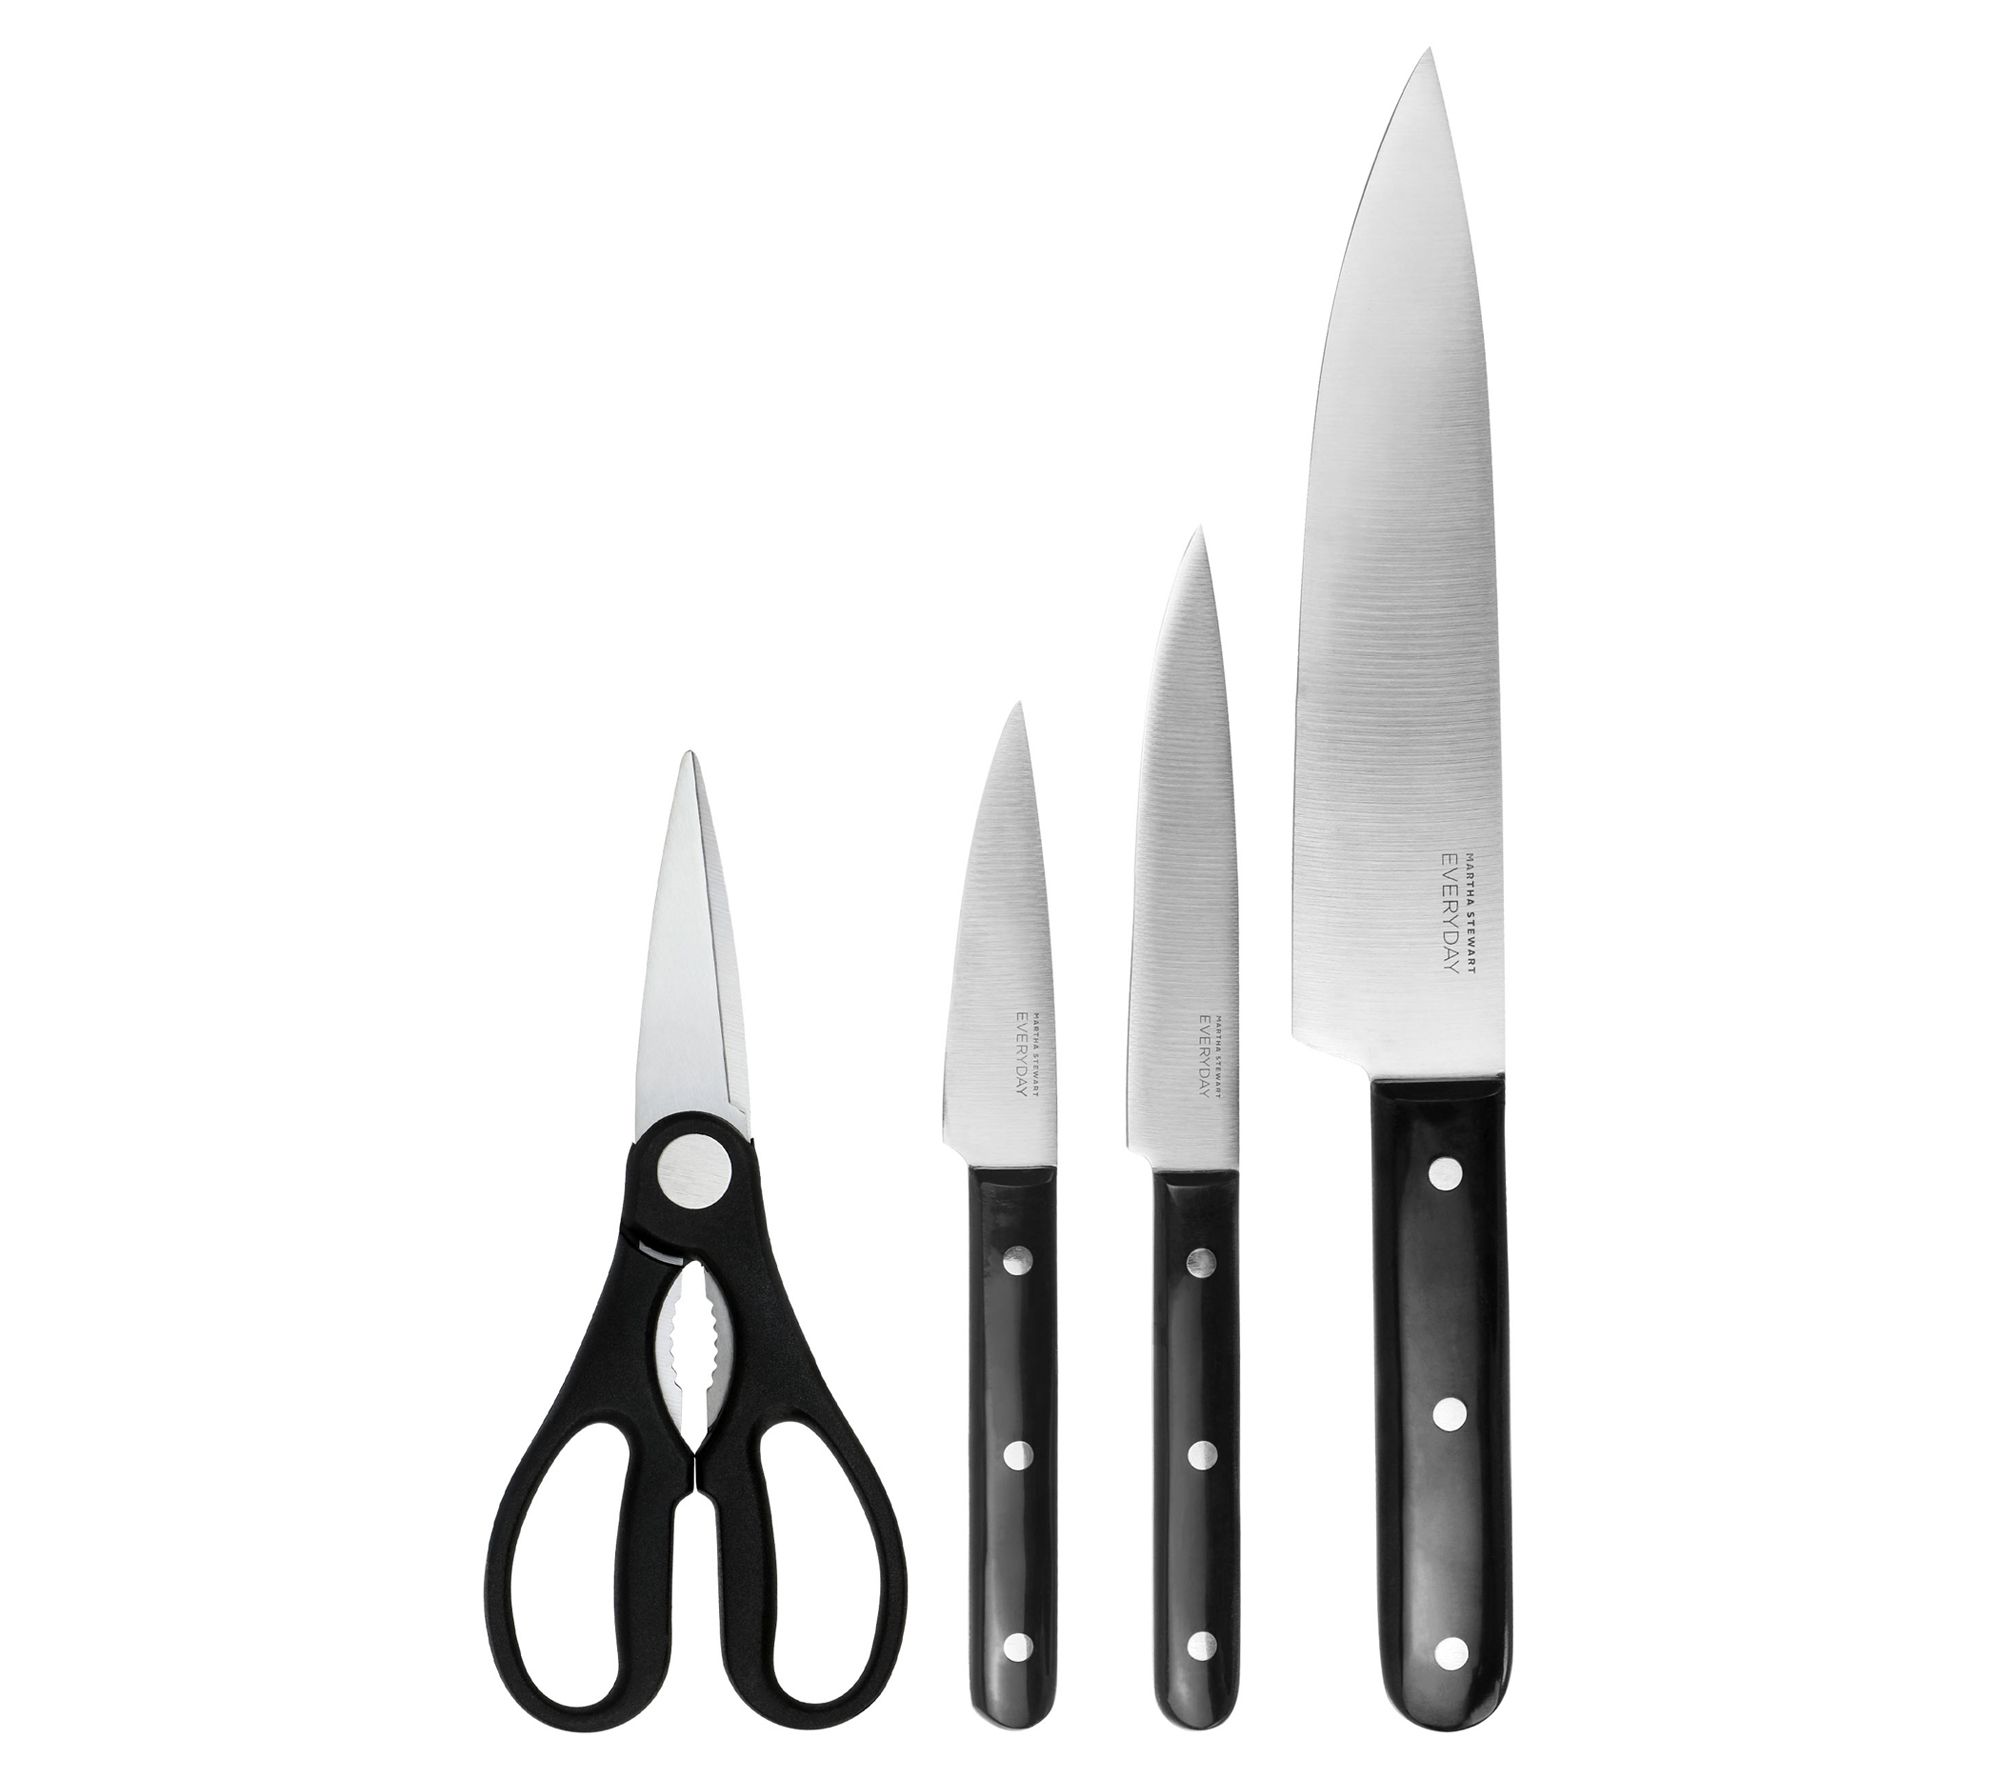 Martha Stewart 9-Piece Stainless Steel Kitchen Gadget and Tool Set